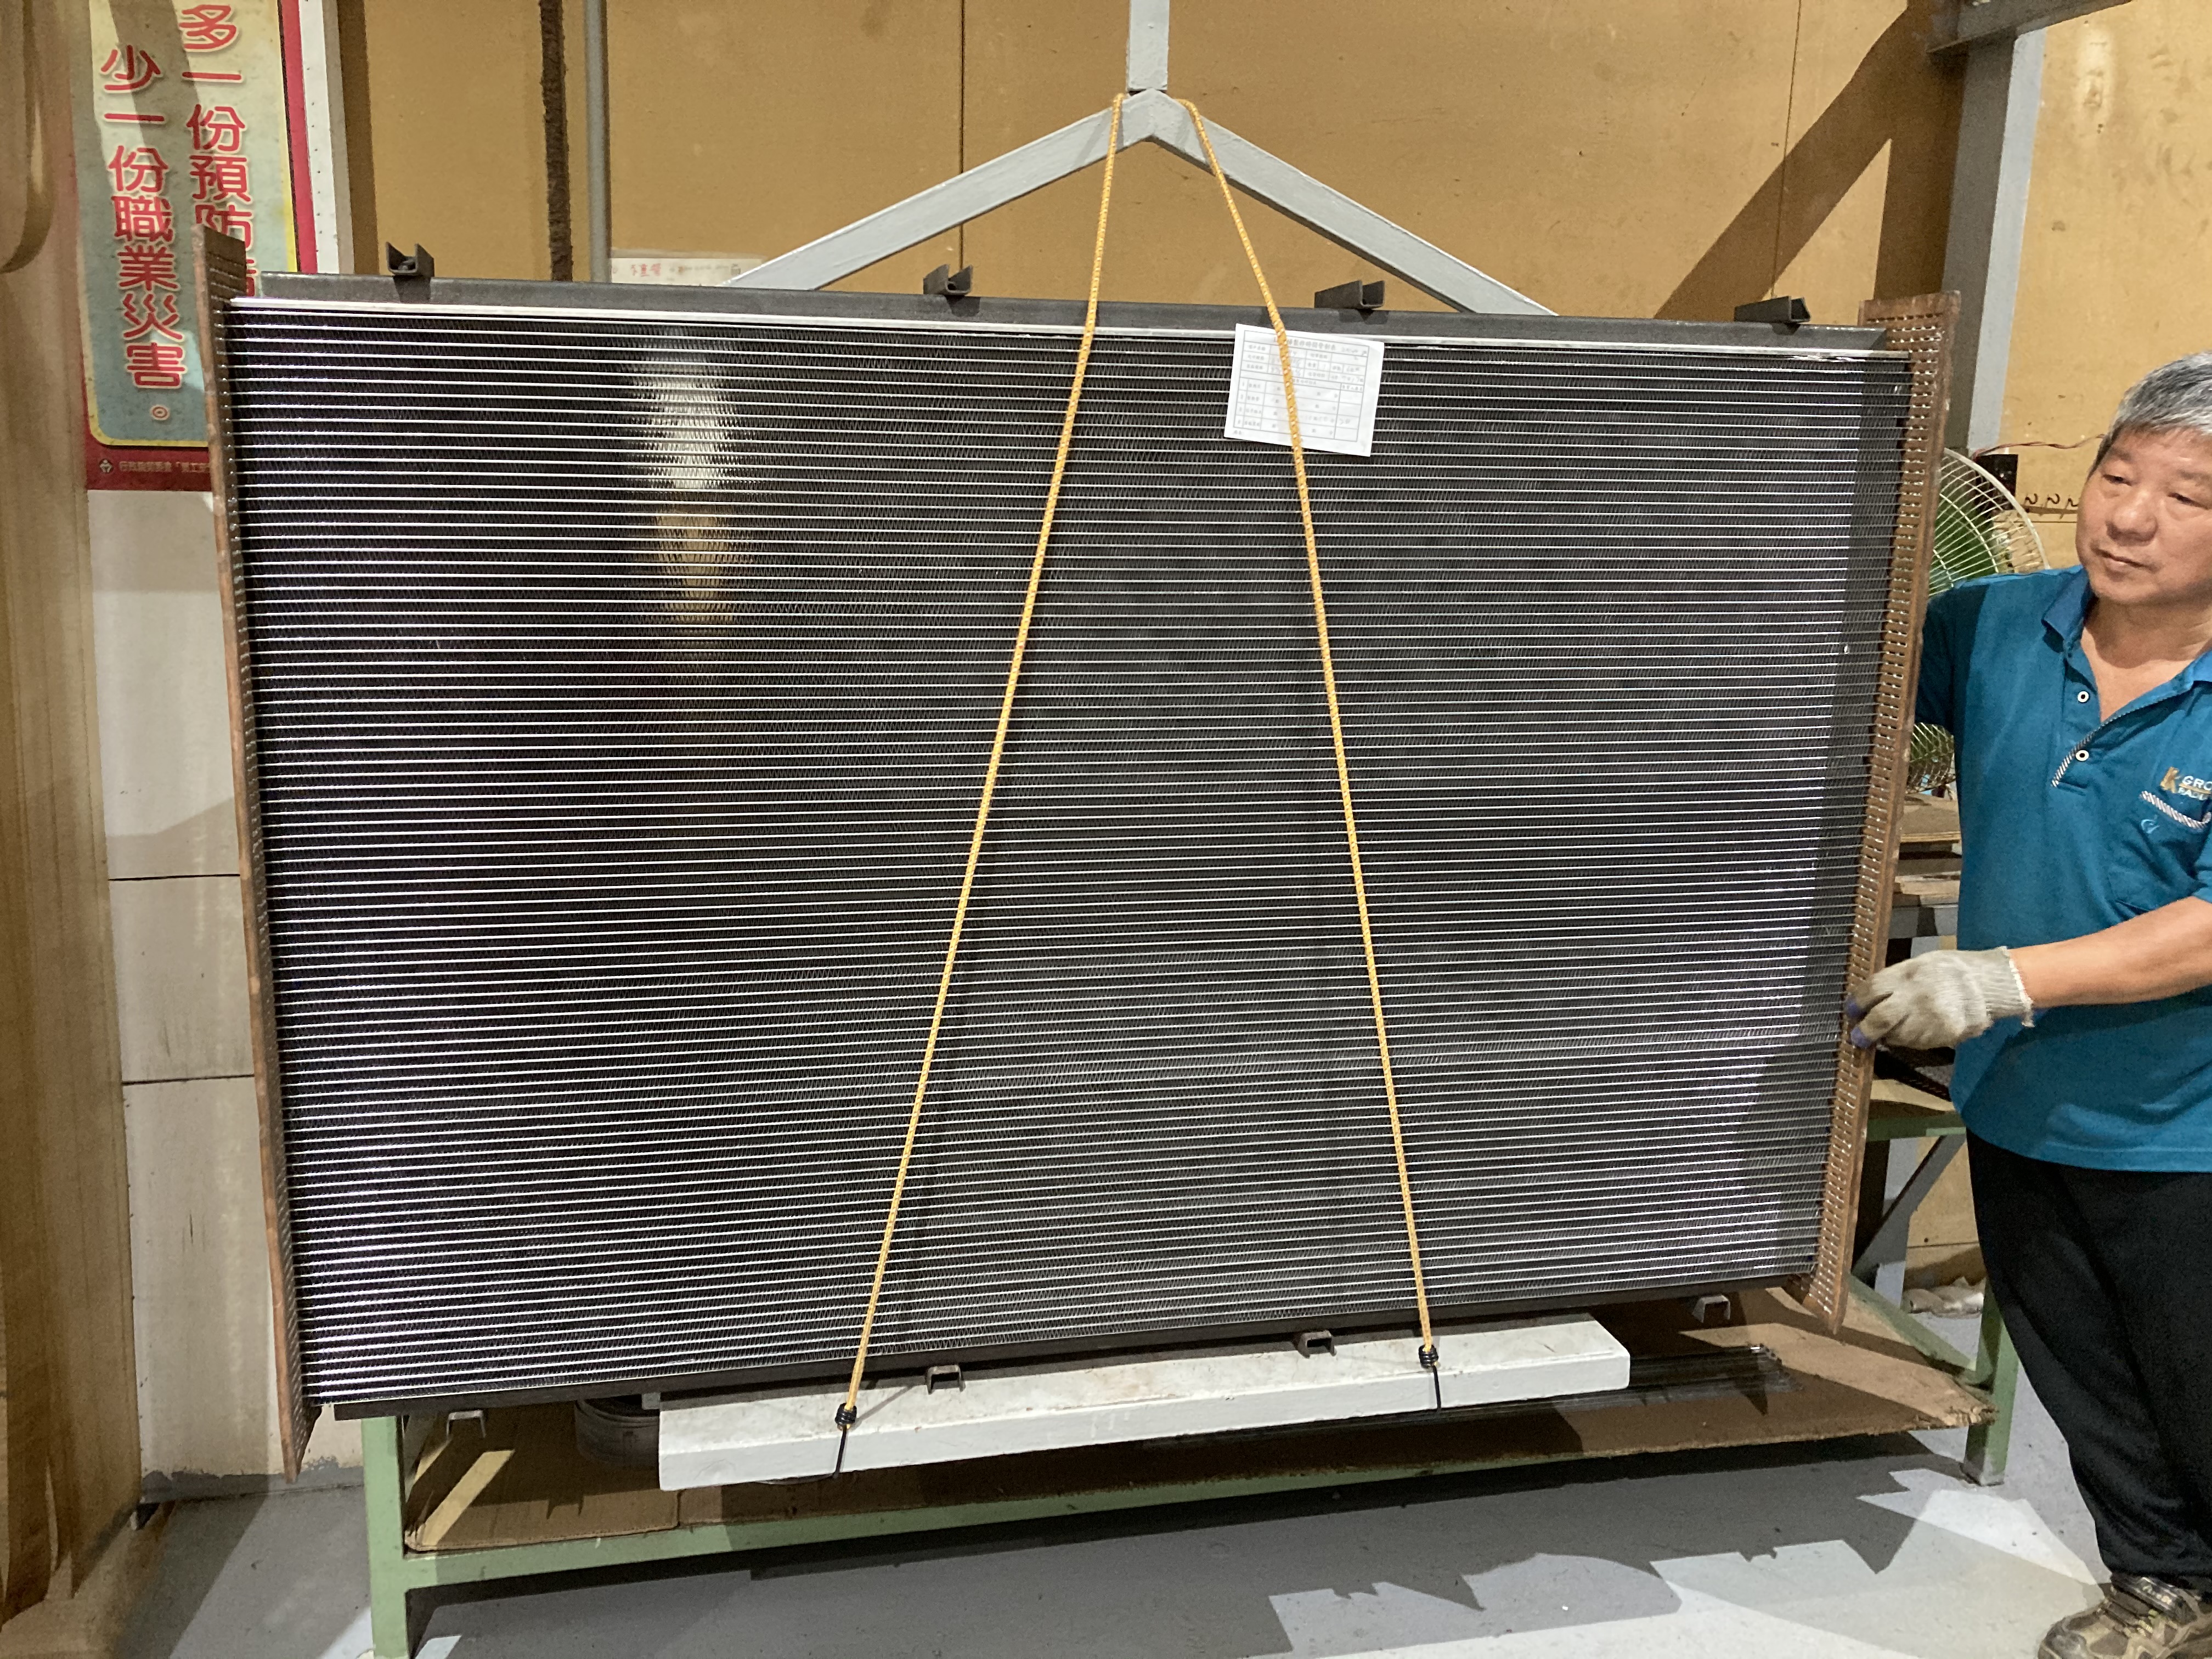 Tin coating fin radiator